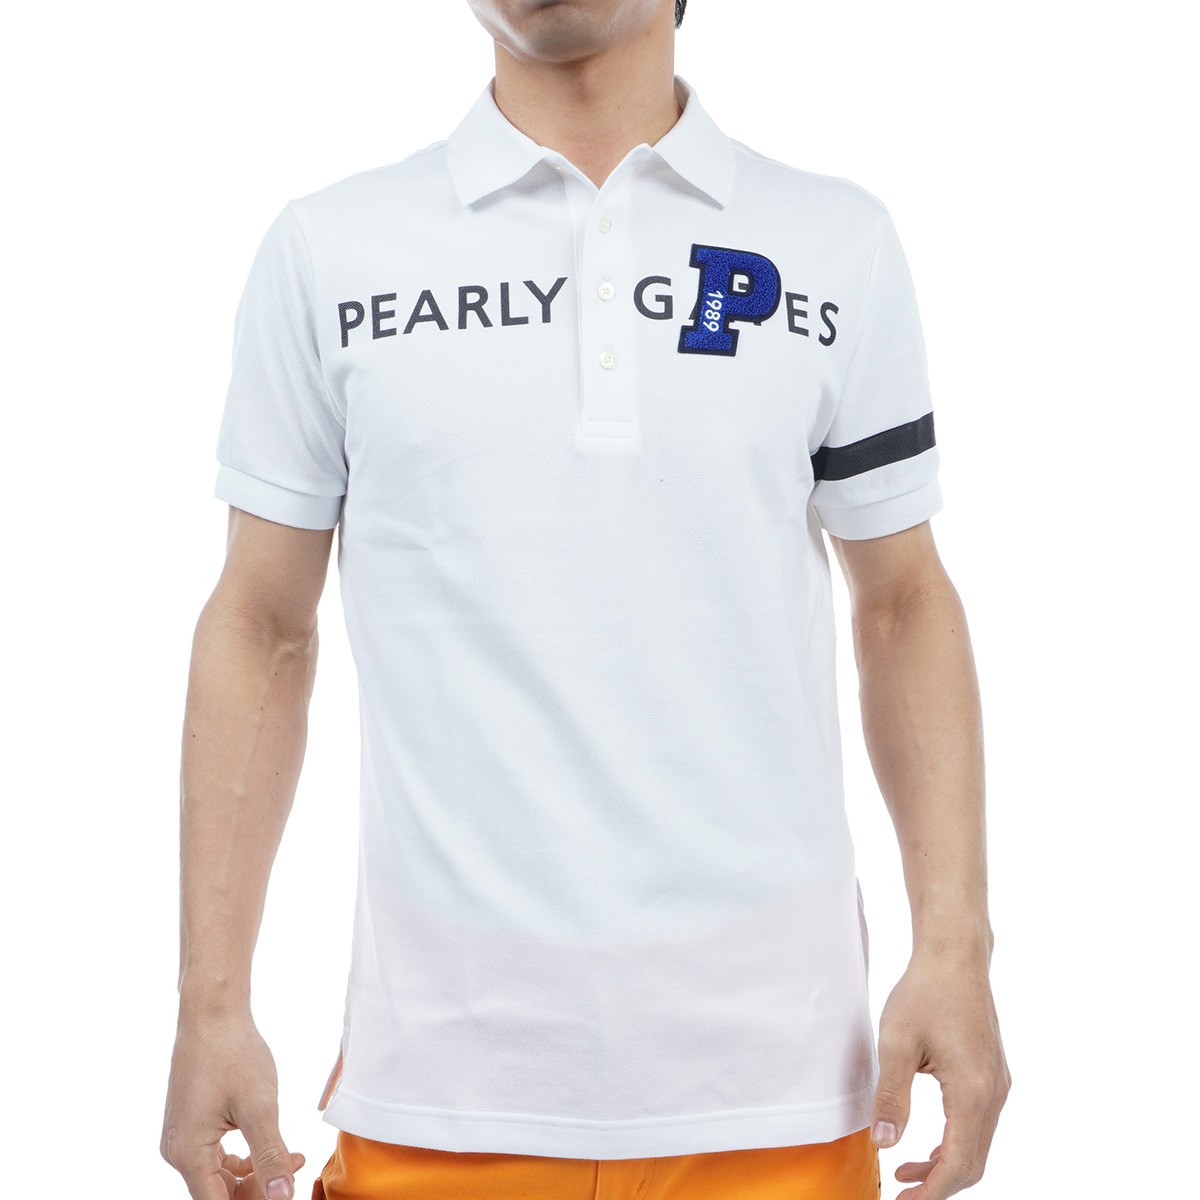 ポロシャツ ゴルフウェア メンズ パーリーゲイツの人気商品